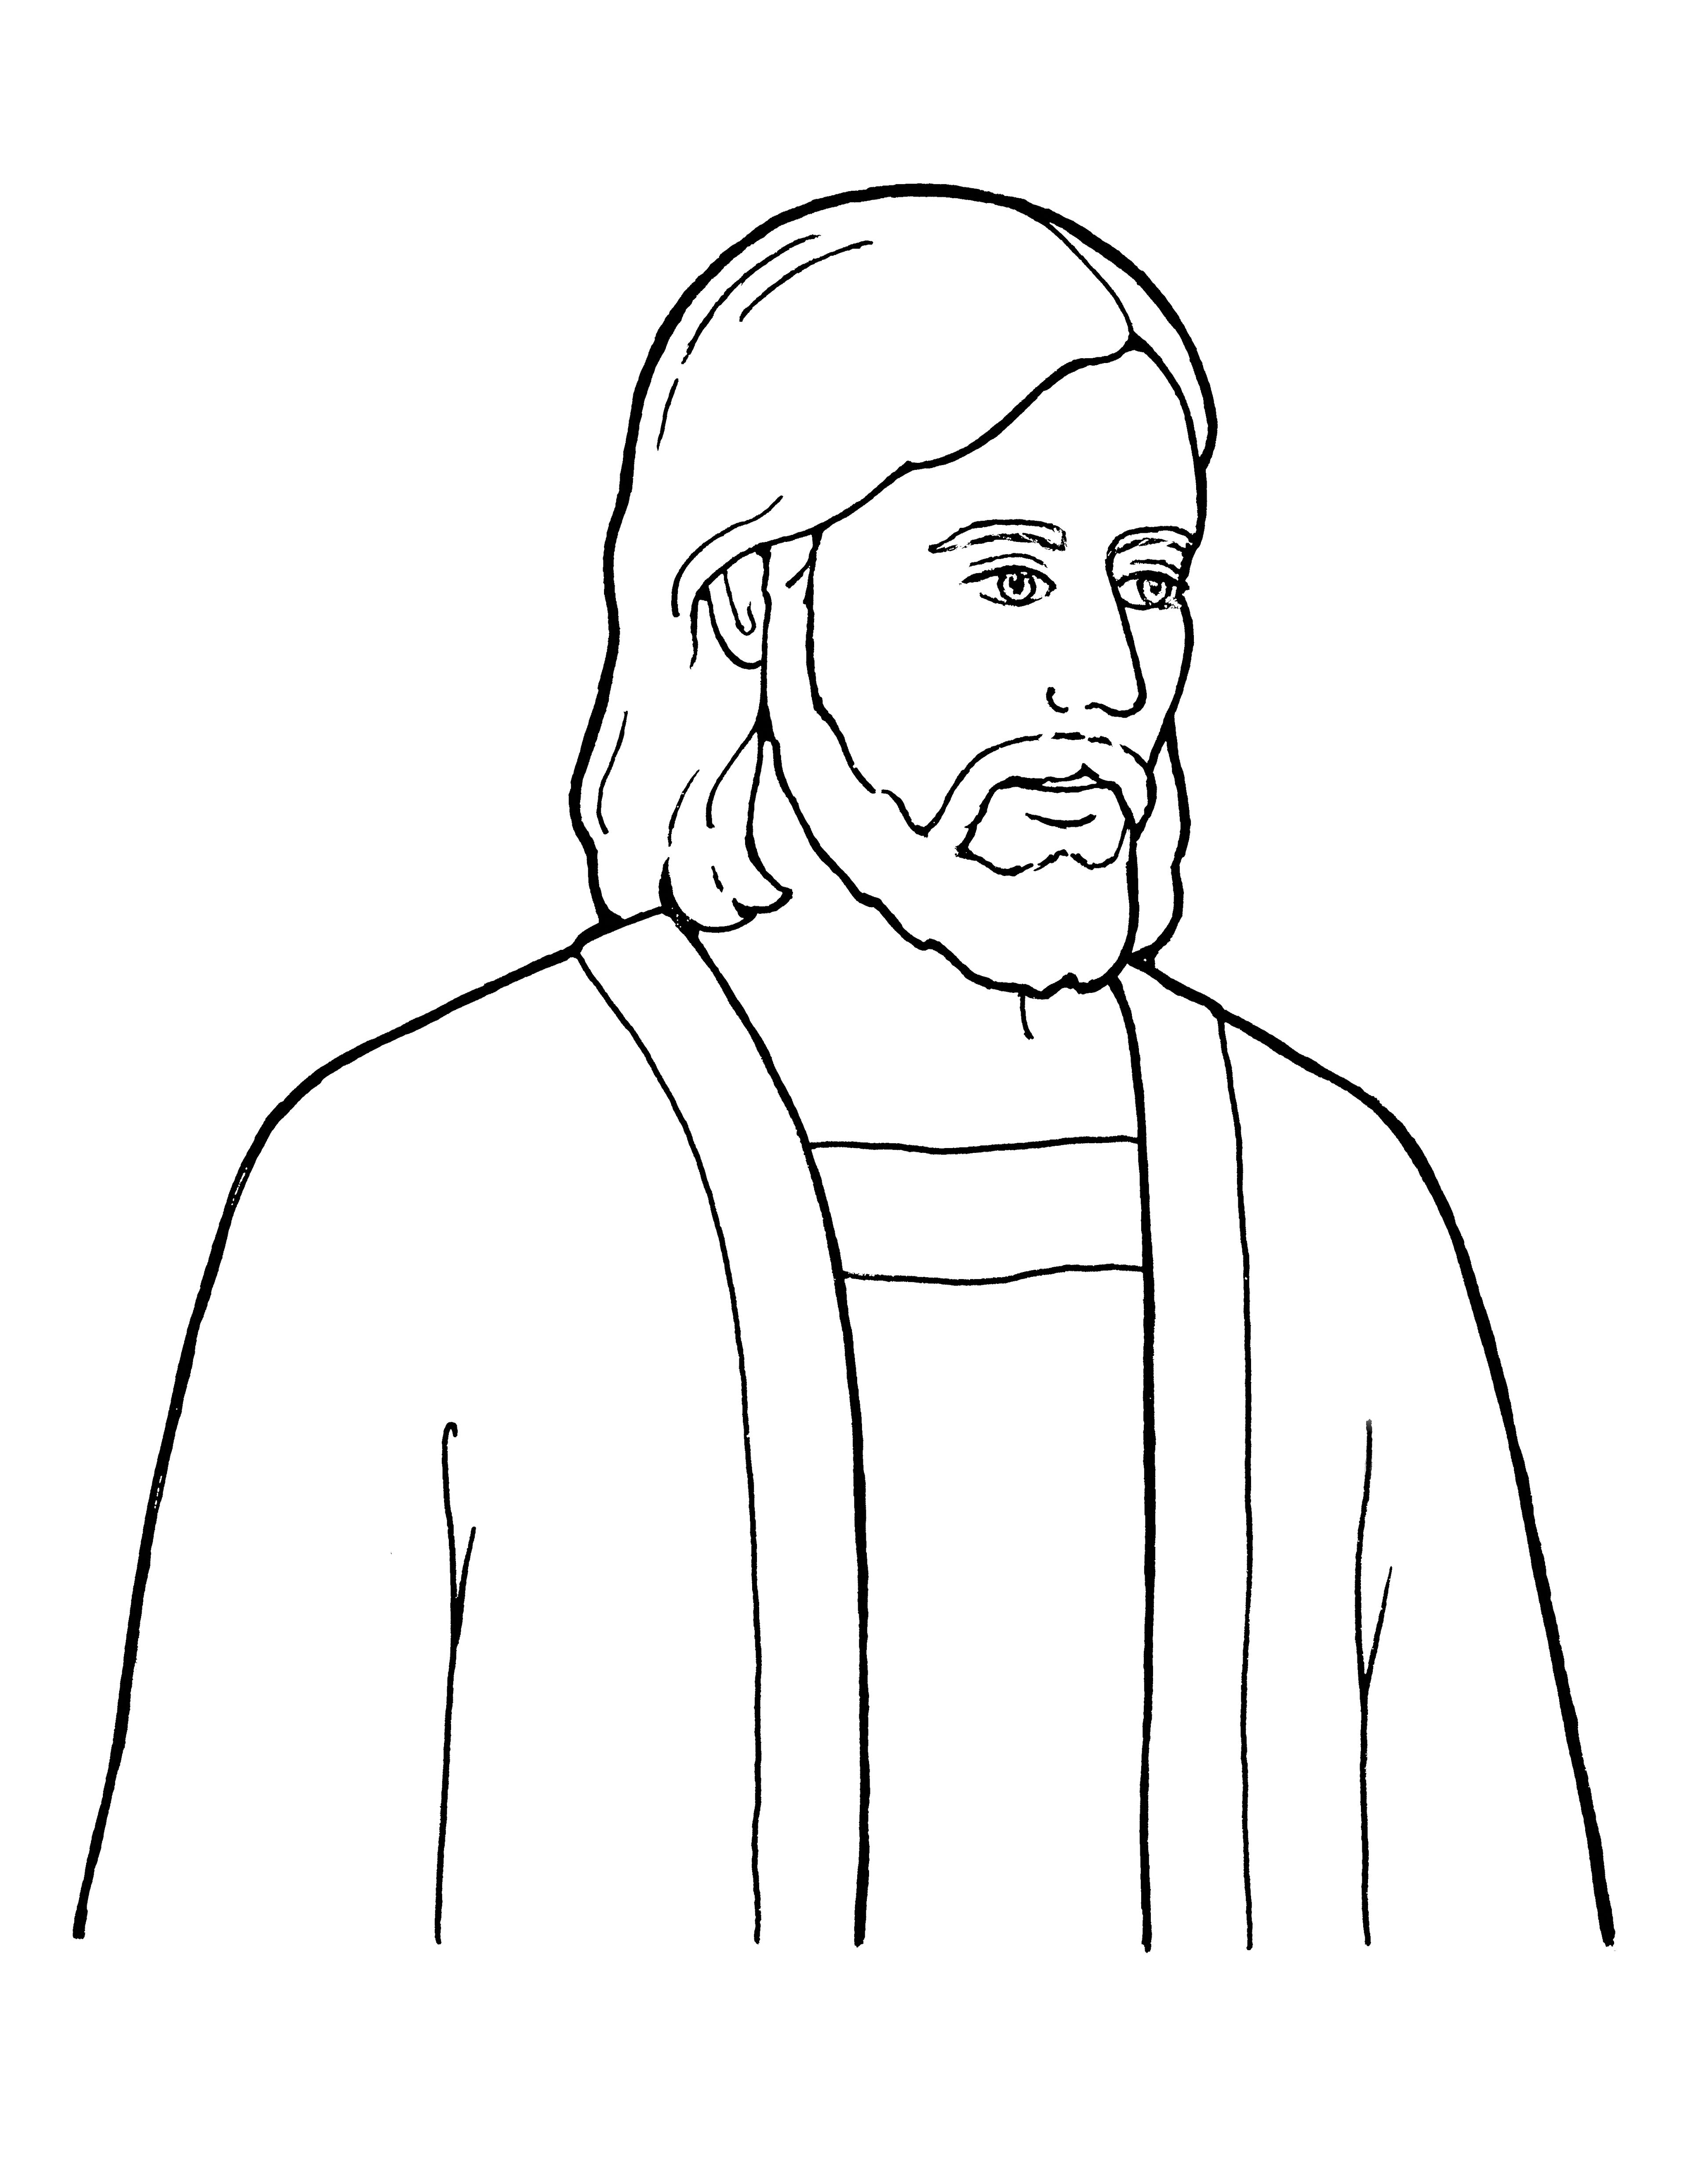 Ilustración de Jesucristo, el Salvador del mundo.